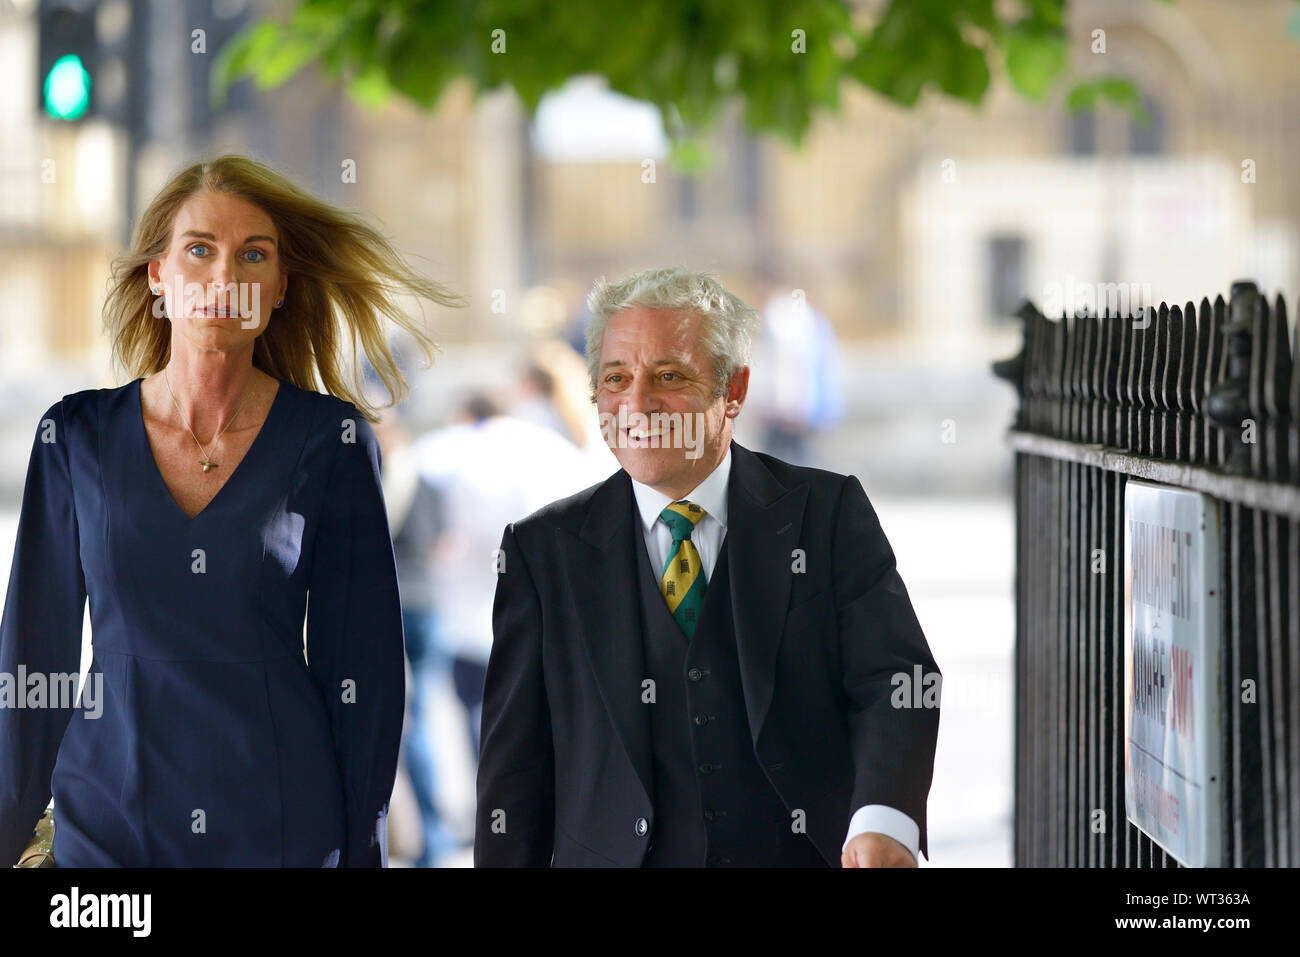 John Bercow MP - Altoparlante della House of Commons - In cammino con la moglie Sally in Westminster, 10 Settembre 2019 Foto Stock